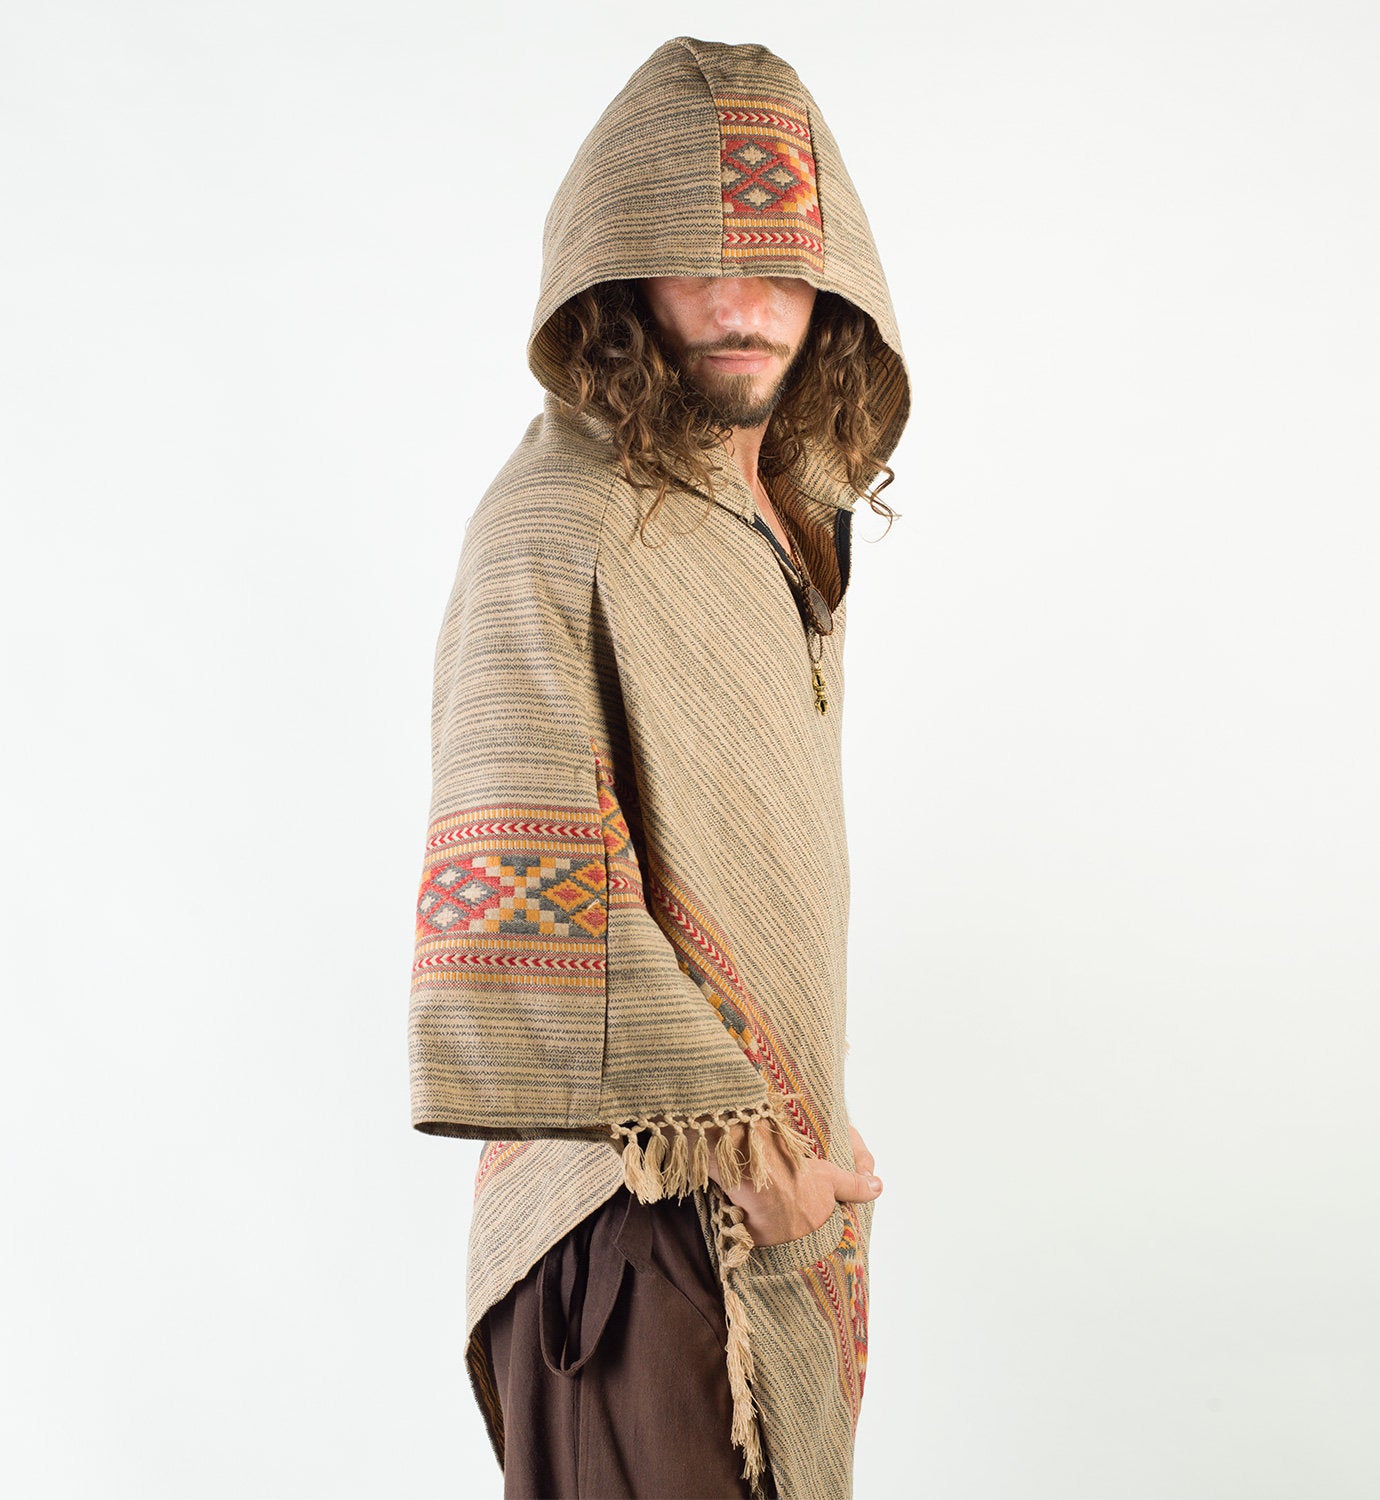 Poncho à capuche marron pour homme, laine de cachemire, fait à la main Festival Boho Primitive Gypsy, taille unique deux poches, broderie celtique, mexicain, AJJAYA